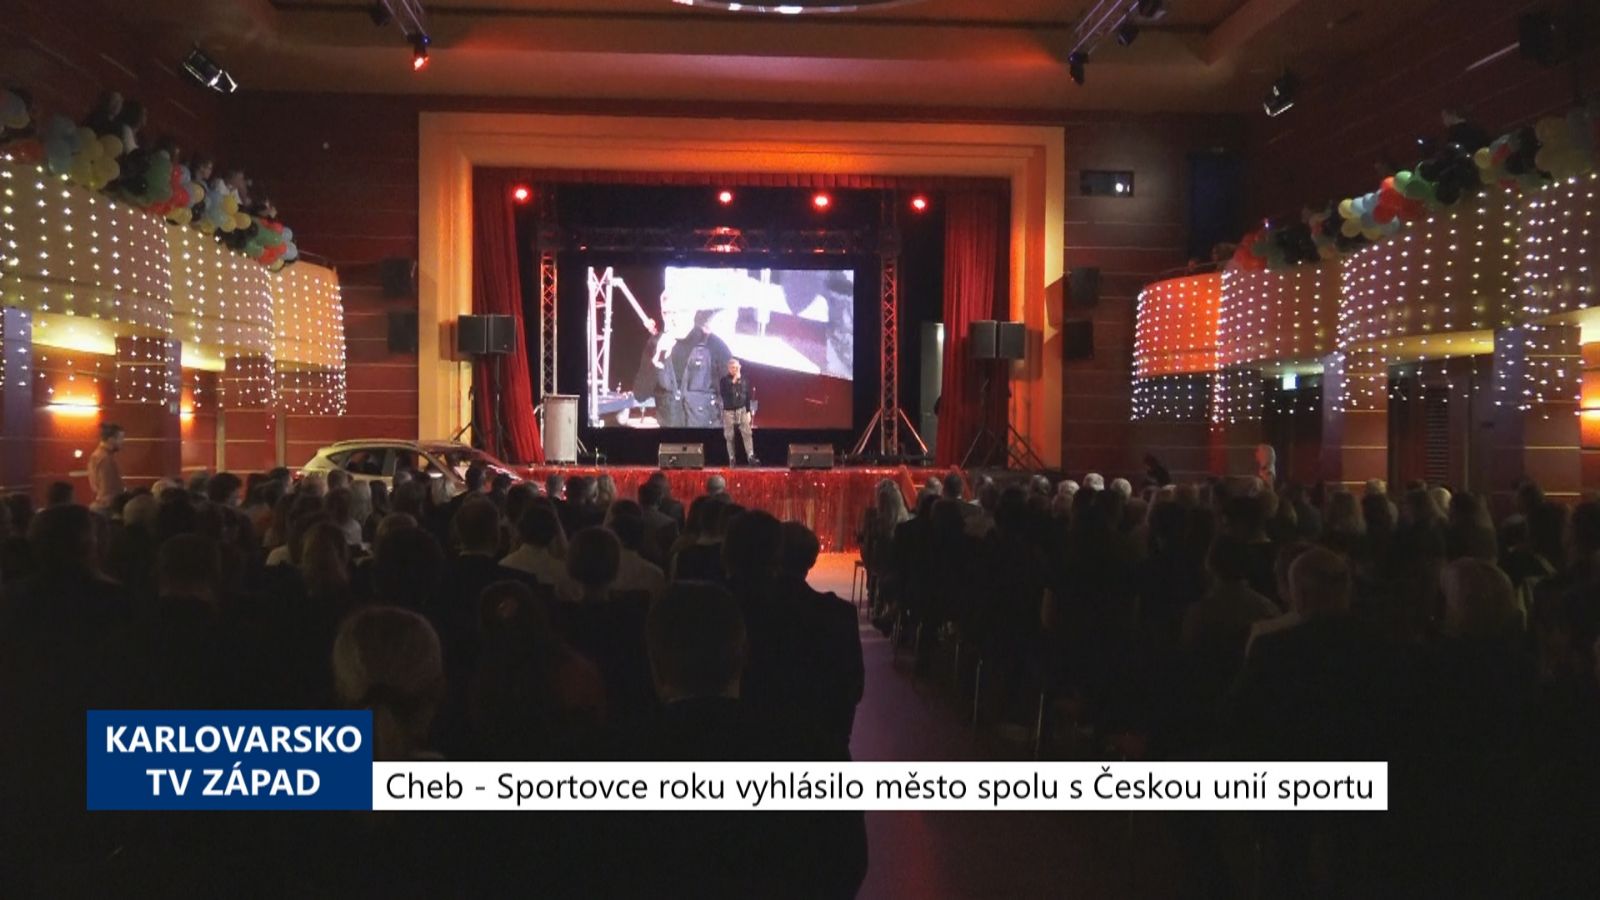 Cheb: Sportovce roku vyhlásilo město spolu s Českou unií sportu (TV Západ)